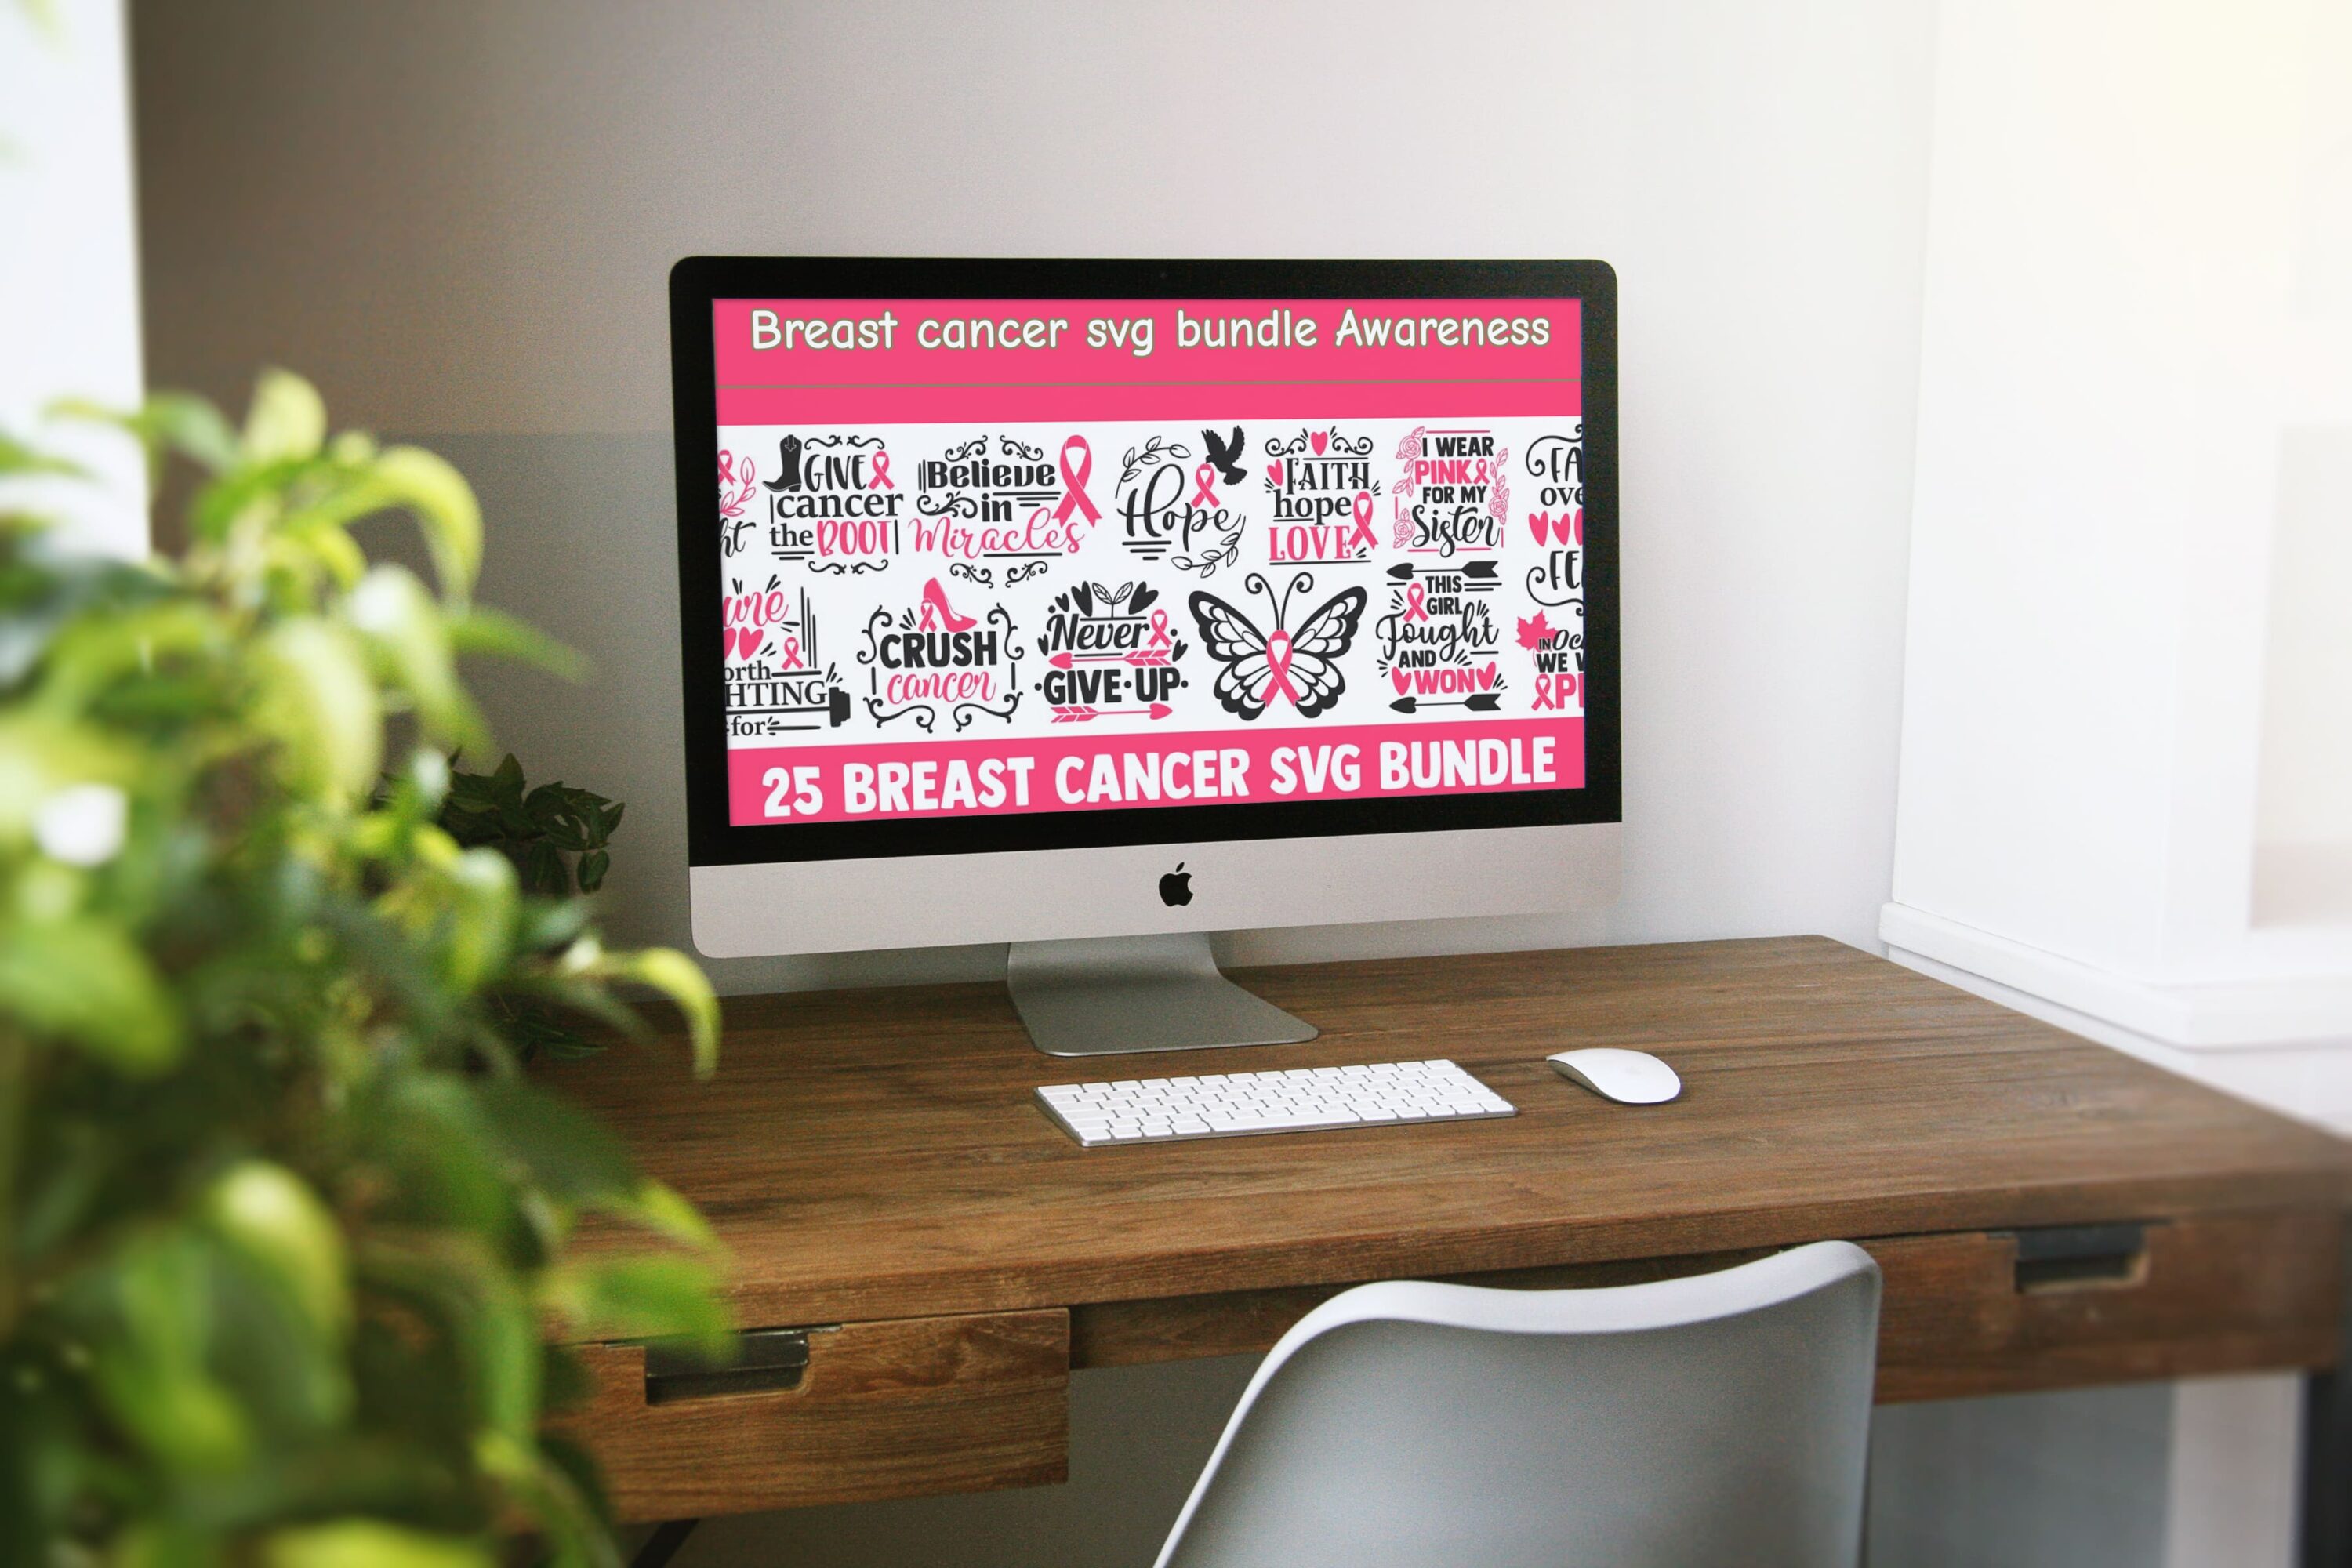 Breast cancer svg bundle Awareness - desktop.